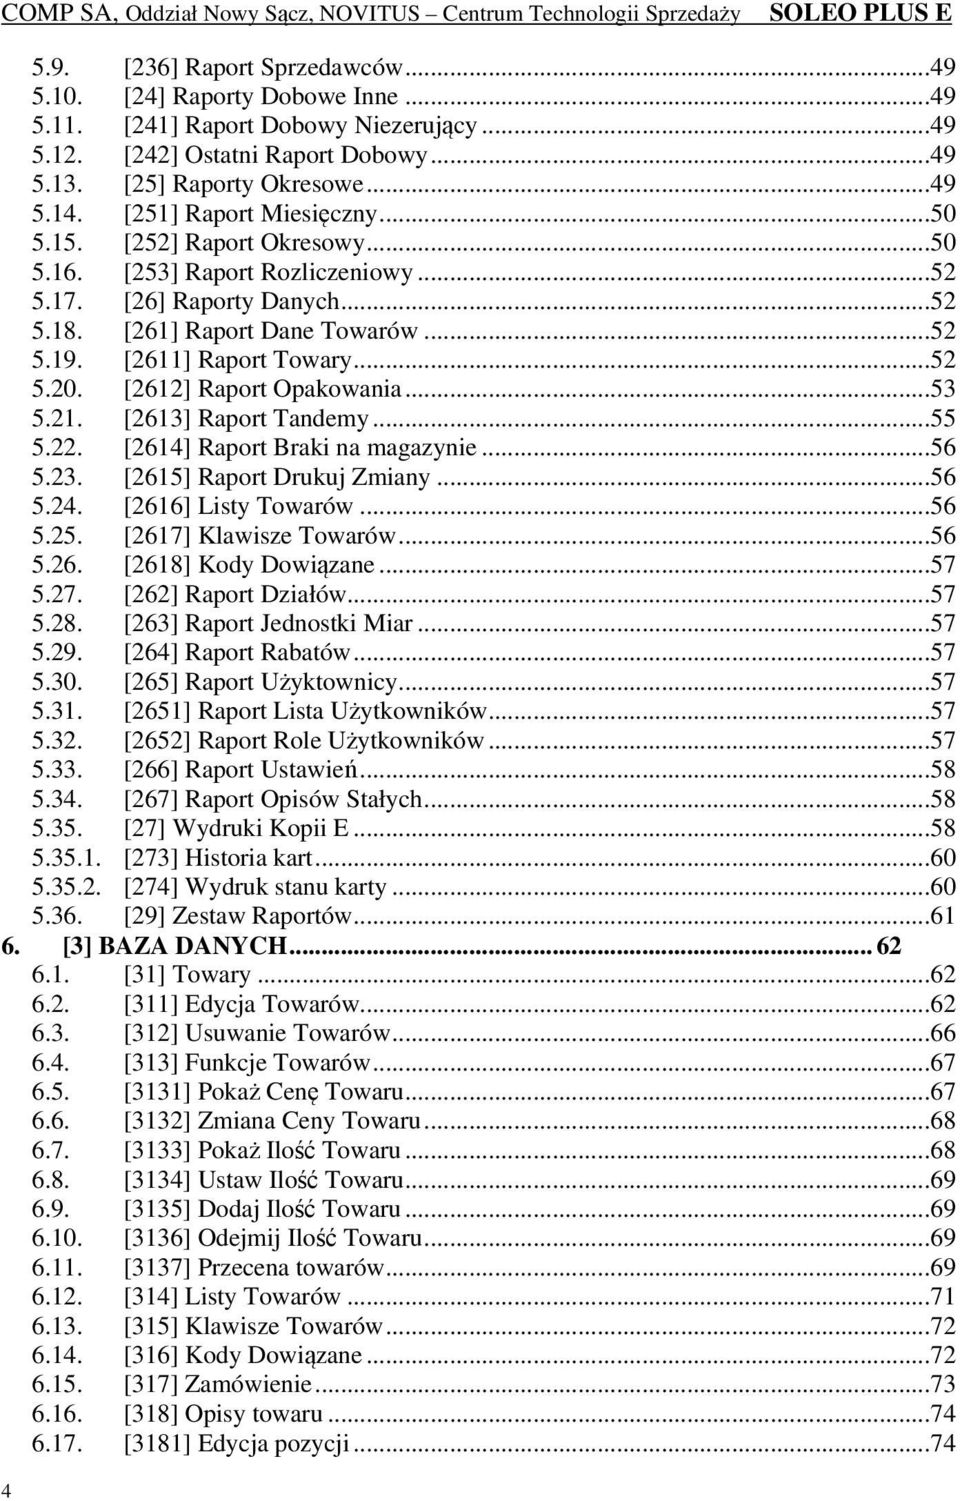 [2612] Raport Opakowania...53 5.21. [2613] Raport Tandemy...55 5.22. [2614] Raport Braki na magazynie...56 5.23. [2615] Raport Drukuj Zmiany...56 5.24. [2616] Listy Towarów...56 5.25.